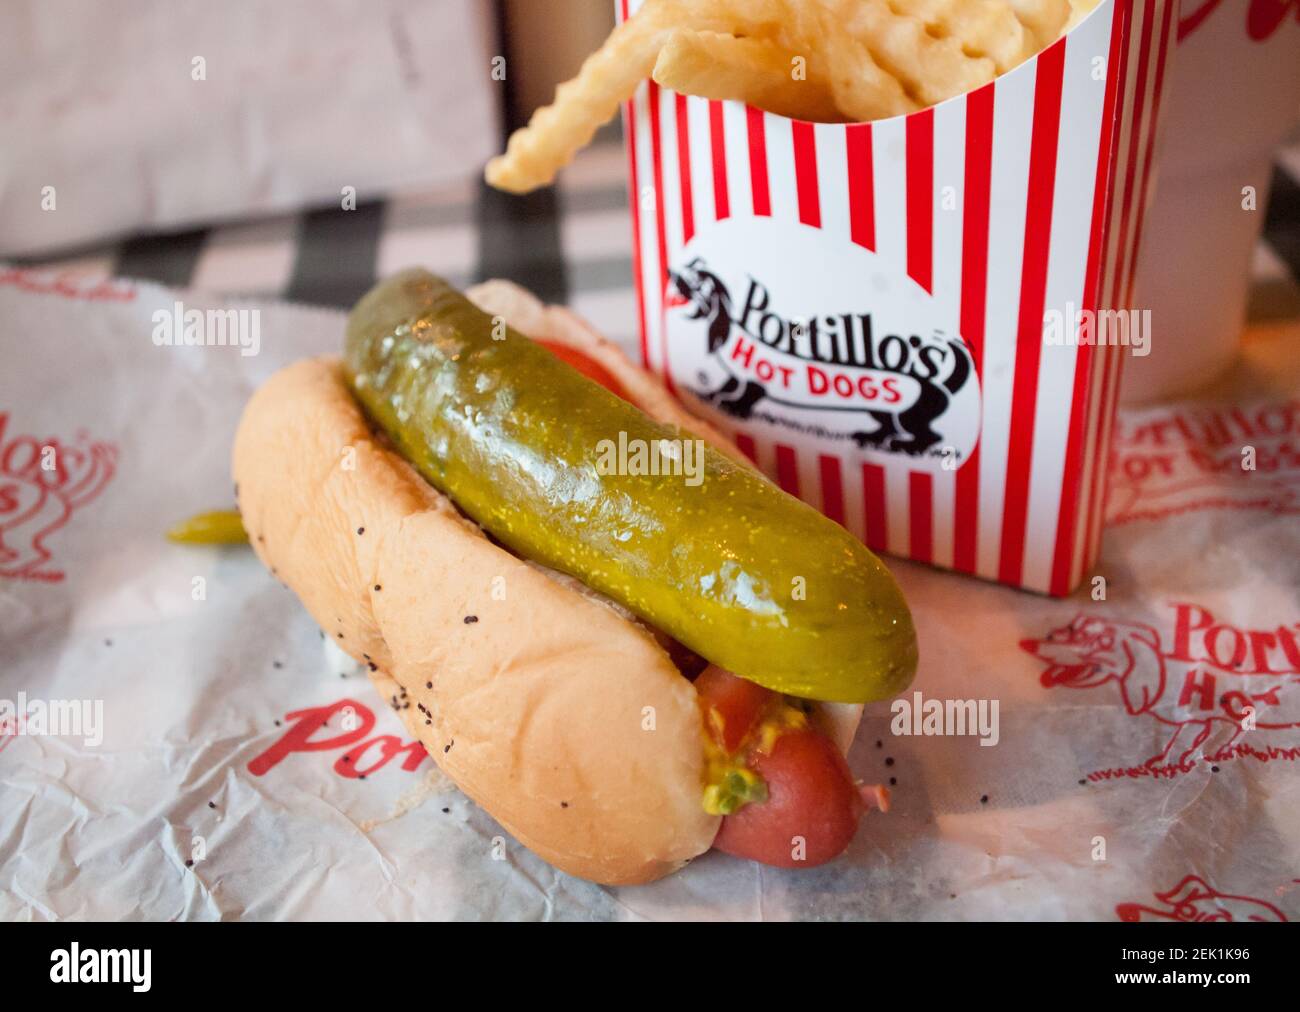 Un clásico estilo Chicago hot dog y papas fritas ondulada desde el Portillo de Hot Dogs en Chicago, Illinois. Foto de stock